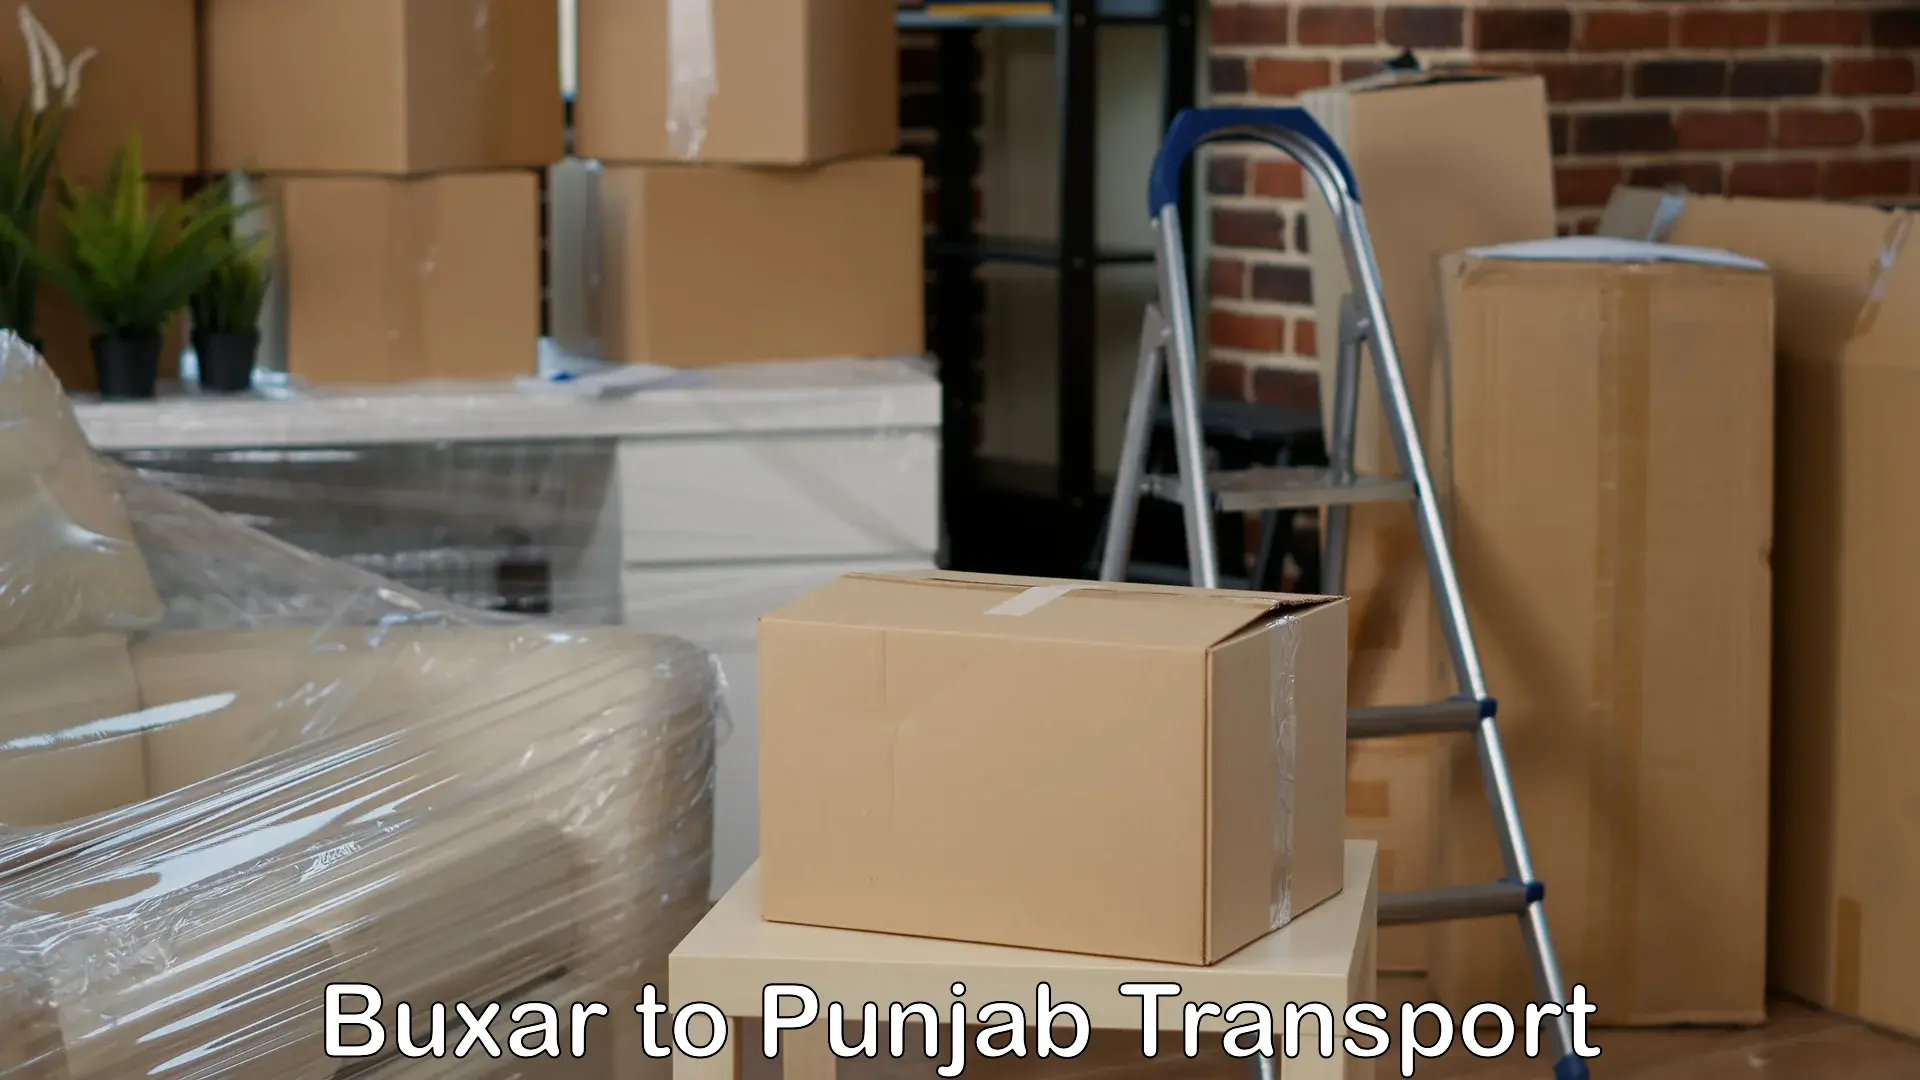 Road transport online services Buxar to Abohar